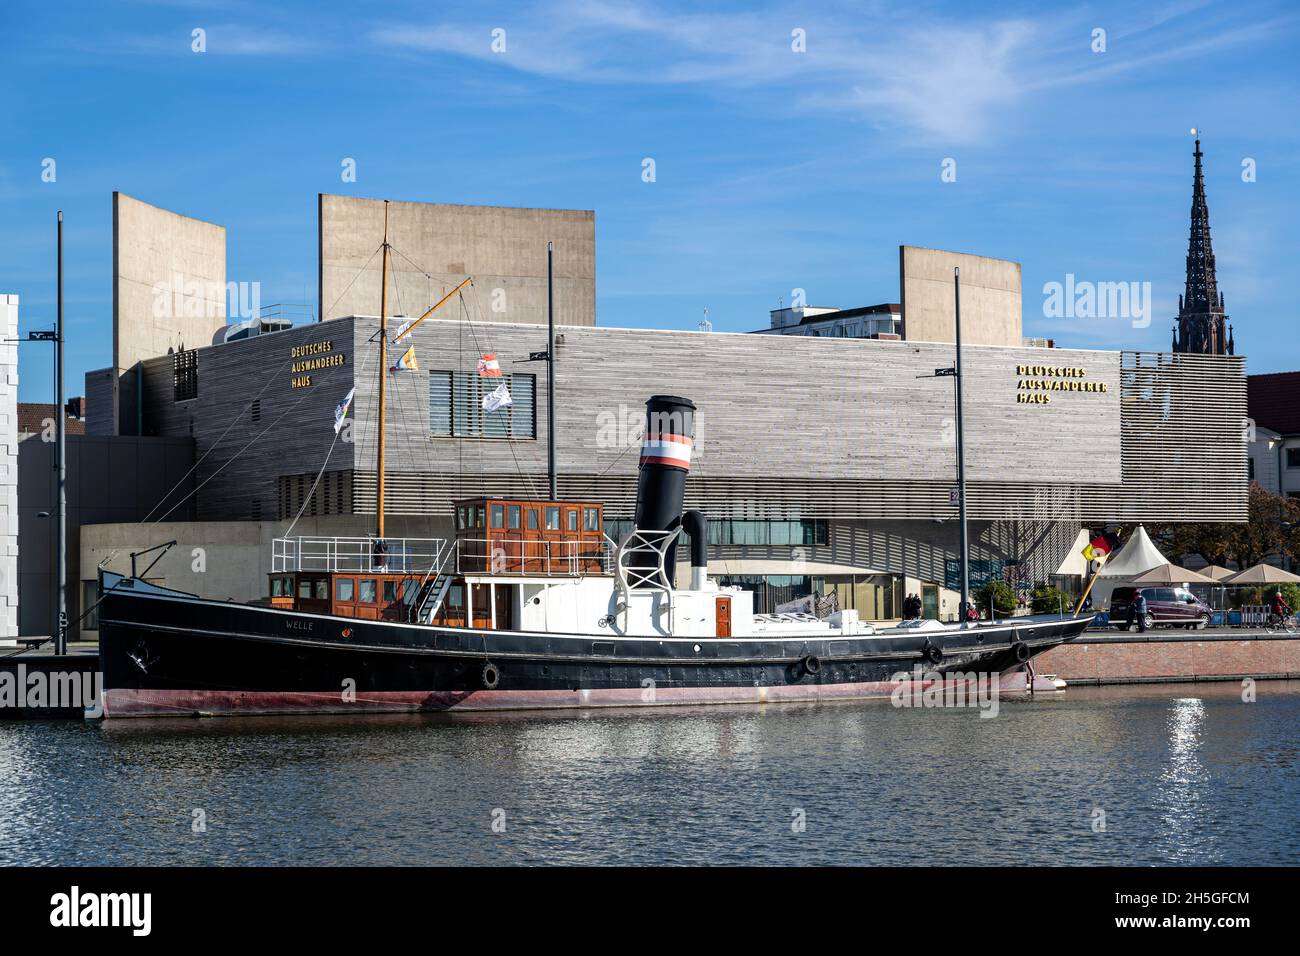 steamboat WELLE en el puerto de Bremerhaven frente al Centro Alemán de Emigración Foto de stock